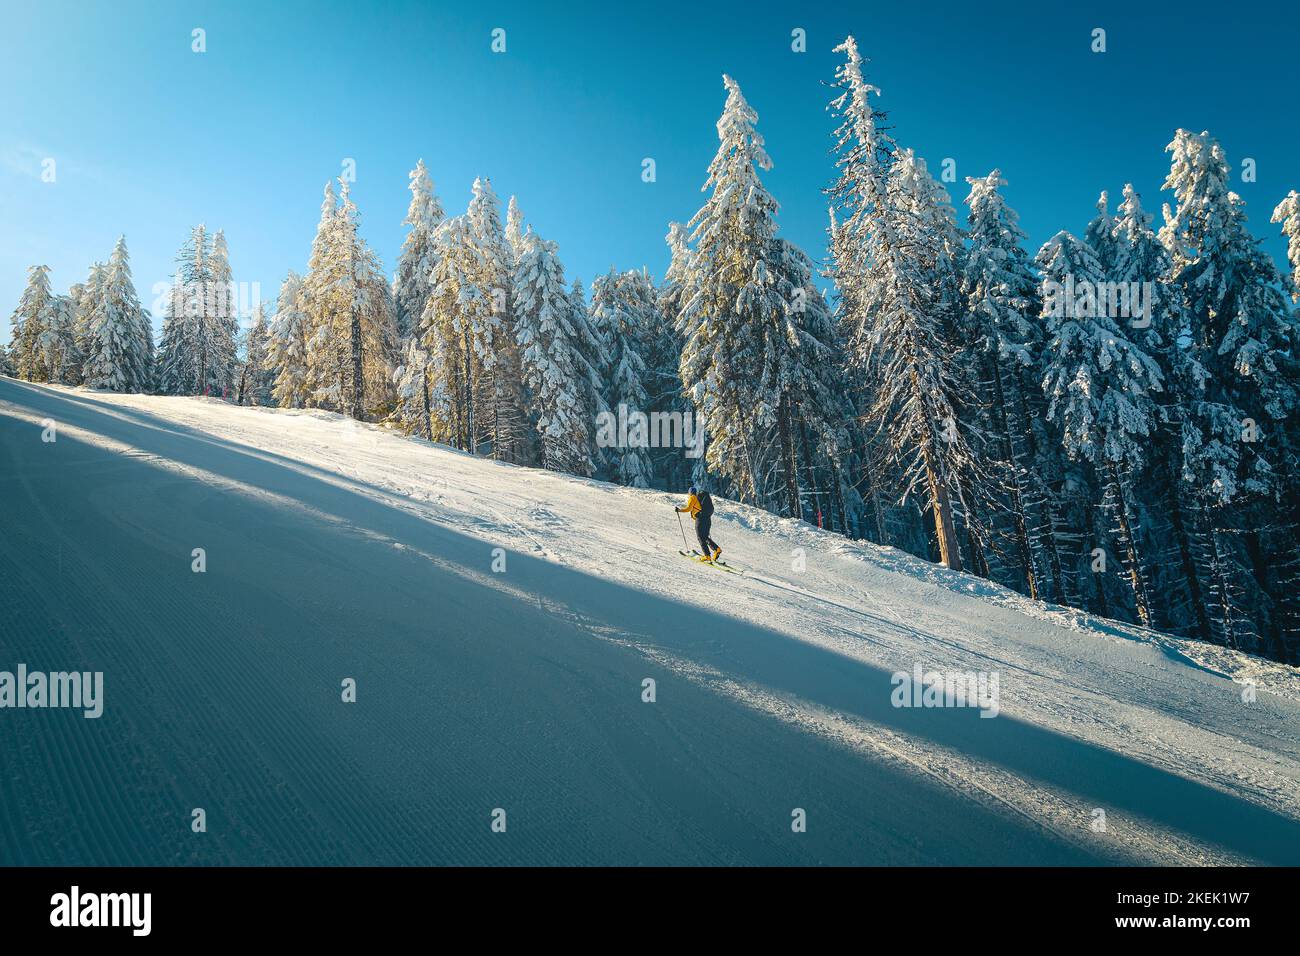 Skilanglauf auf der verschneiten Piste. Skifahrer mit Rucksack, Skitouren auf der verschneiten Schanze, Karpaten, Siebenbürgen, Rumänien, Europa Stockfoto